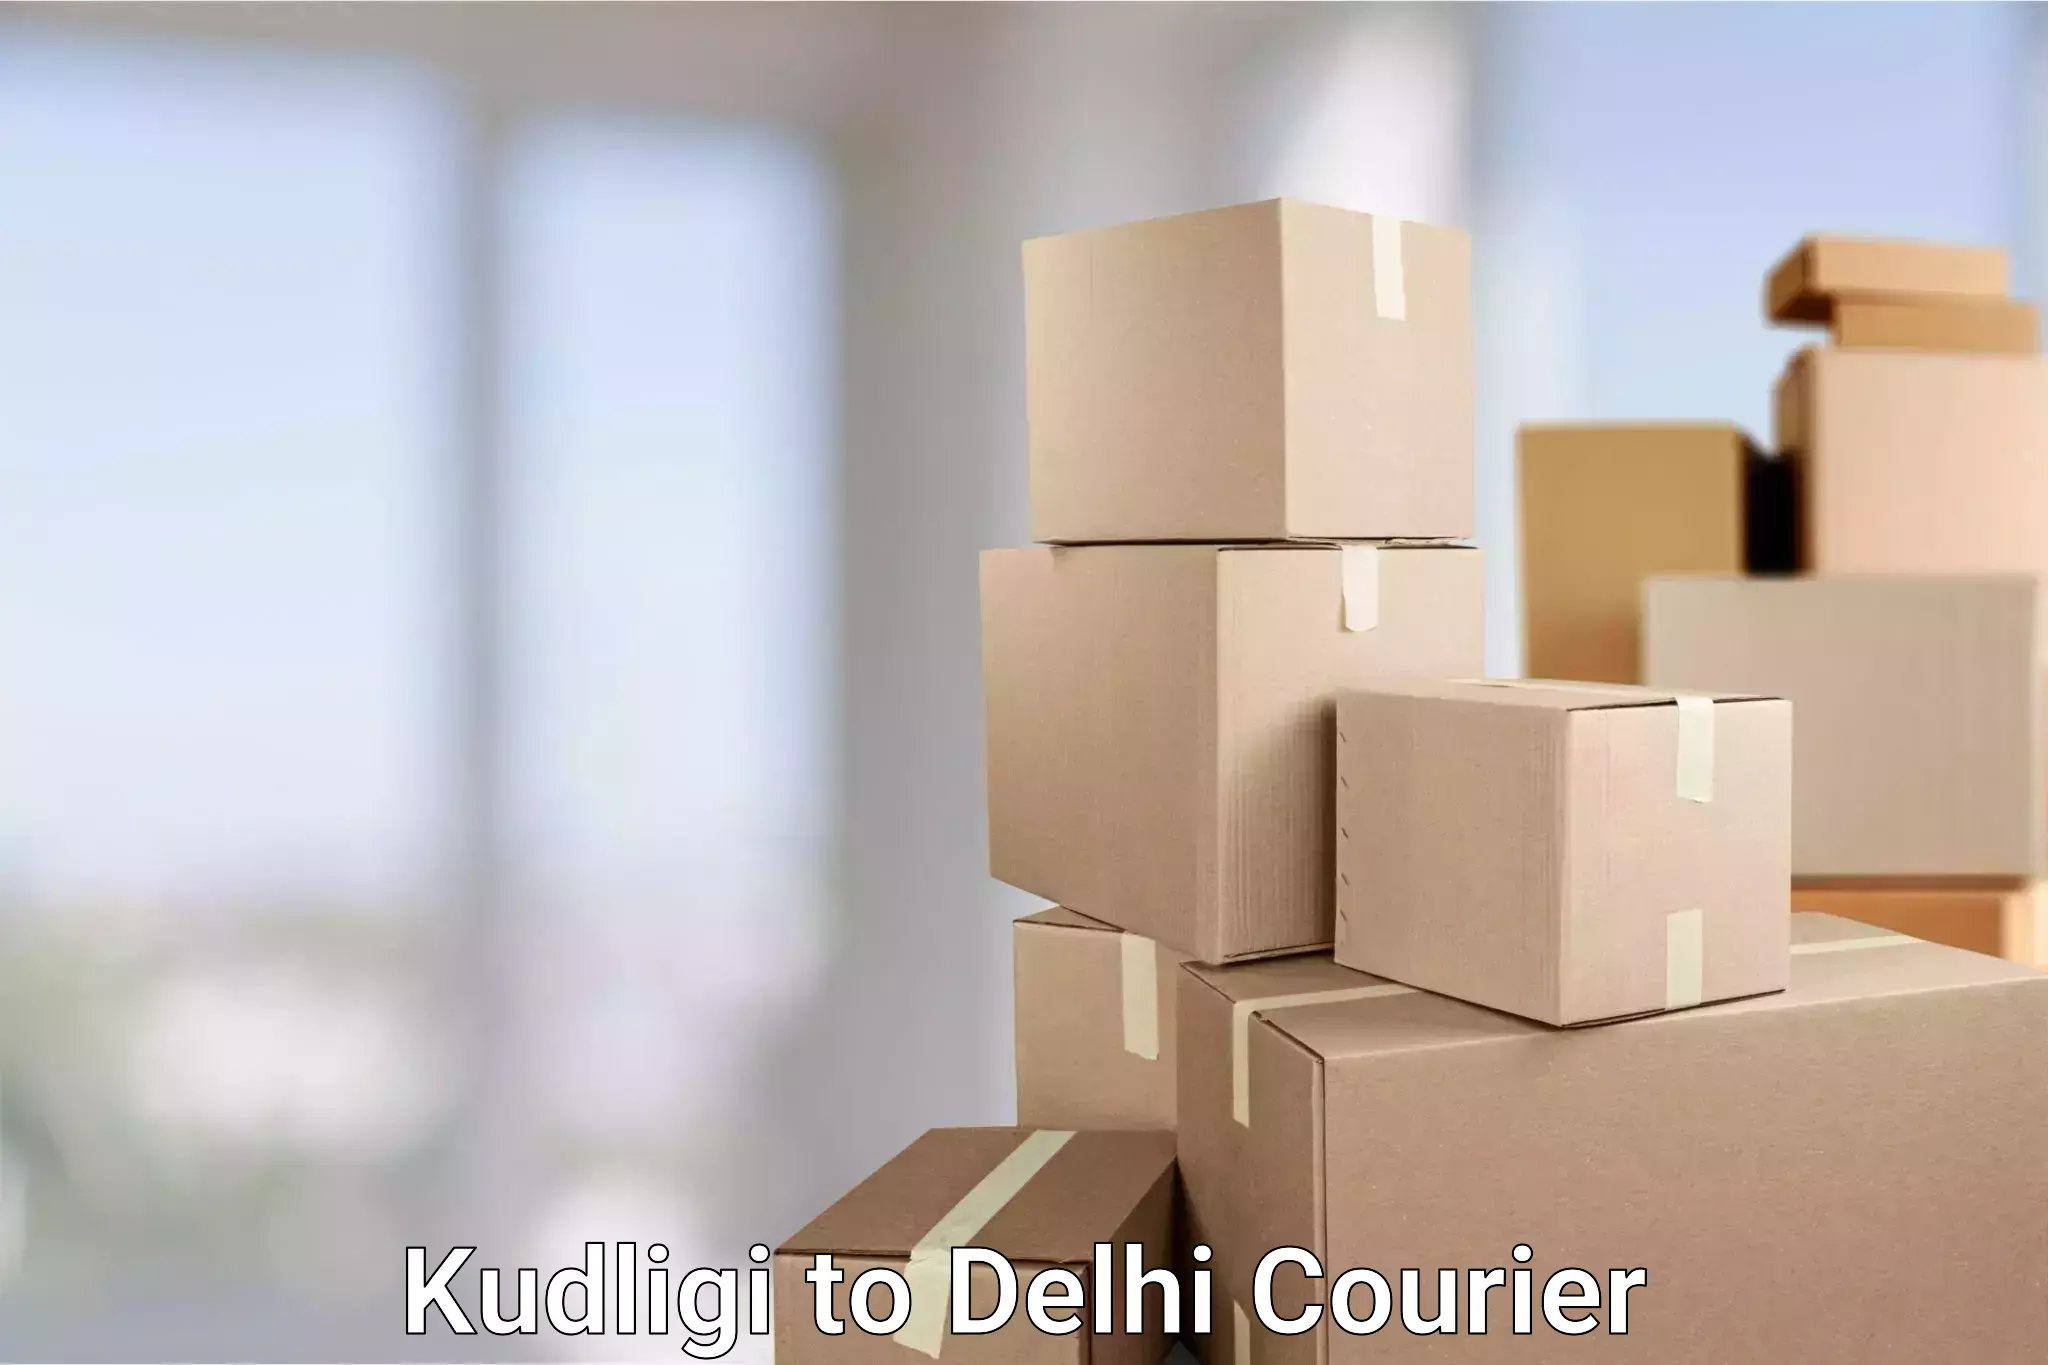 Quality courier services Kudligi to NCR